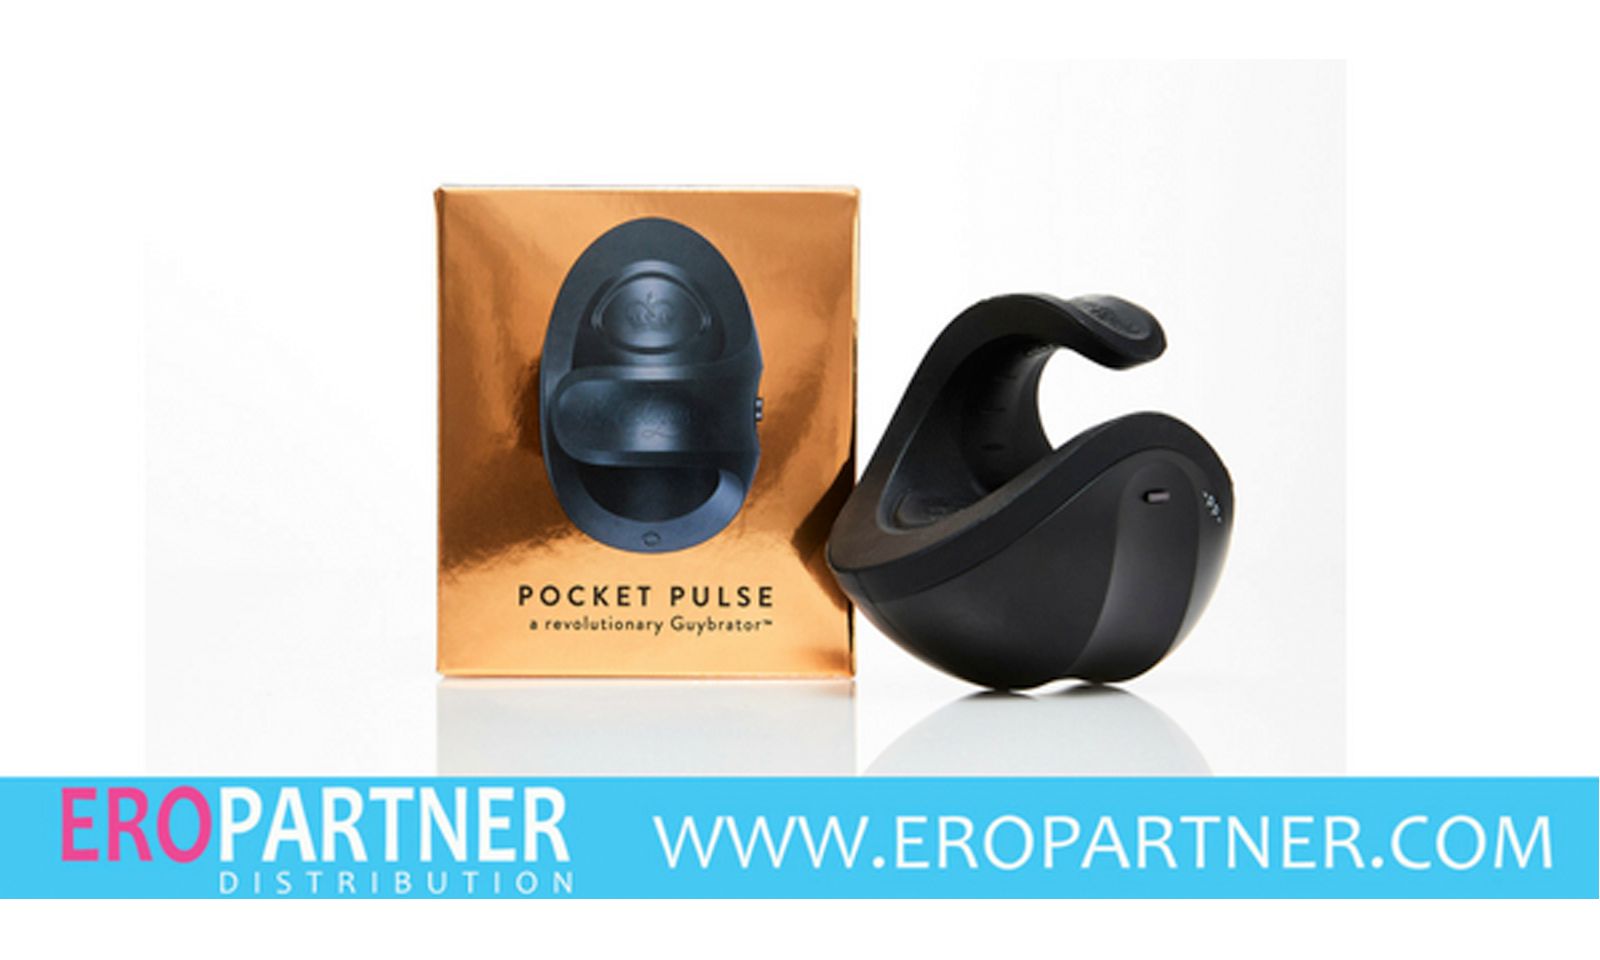 Eropartner Has Hot Octopuss’ Pocket Pulse In Stock, Shipping